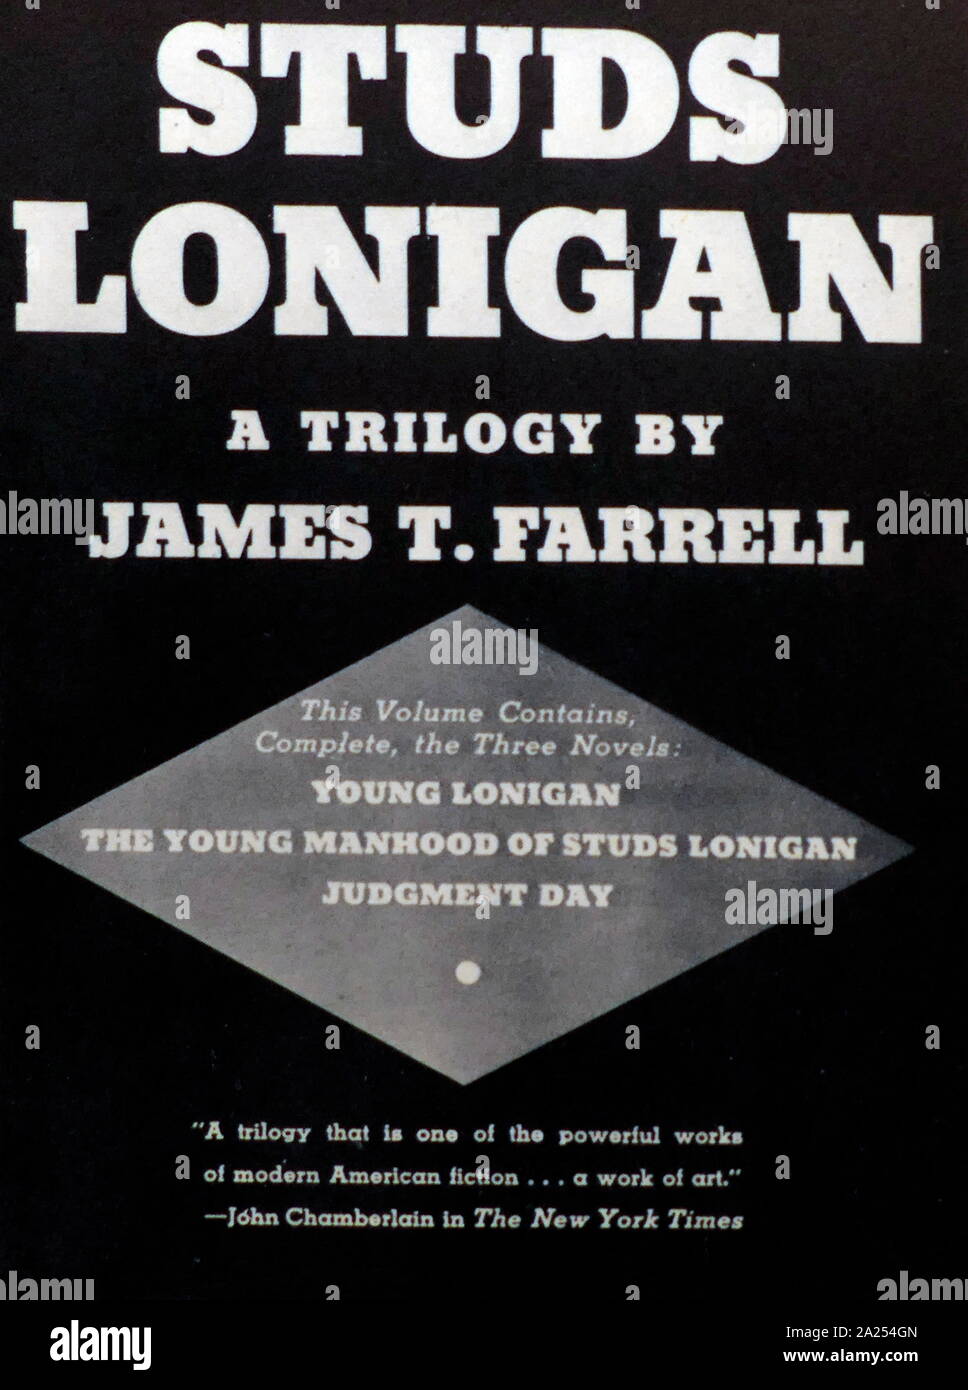 Studs Lonigan Trilogie, von James Thomas Farrell (27. Februar 1904 - 22. August 1979); amerikanischer Schriftsteller die Trilogie, die in einen Film im Jahre 1960 und einem TV-Serie 1979 vorgenommen wurde. Stockfoto